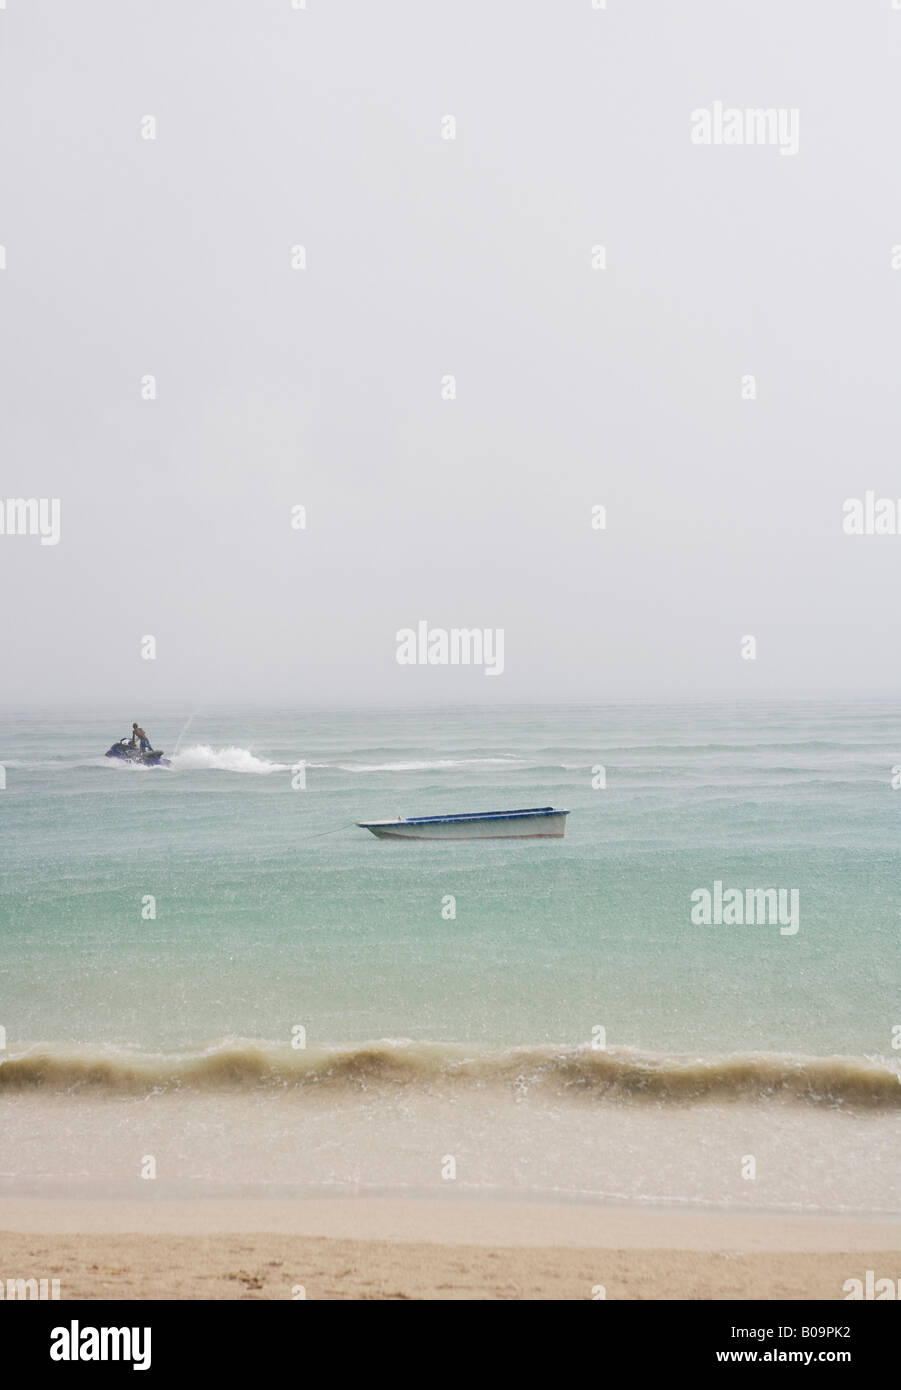 Una barca ancore su di una spiaggia di sabbia bianca, un jet-ski pass. Foto Stock